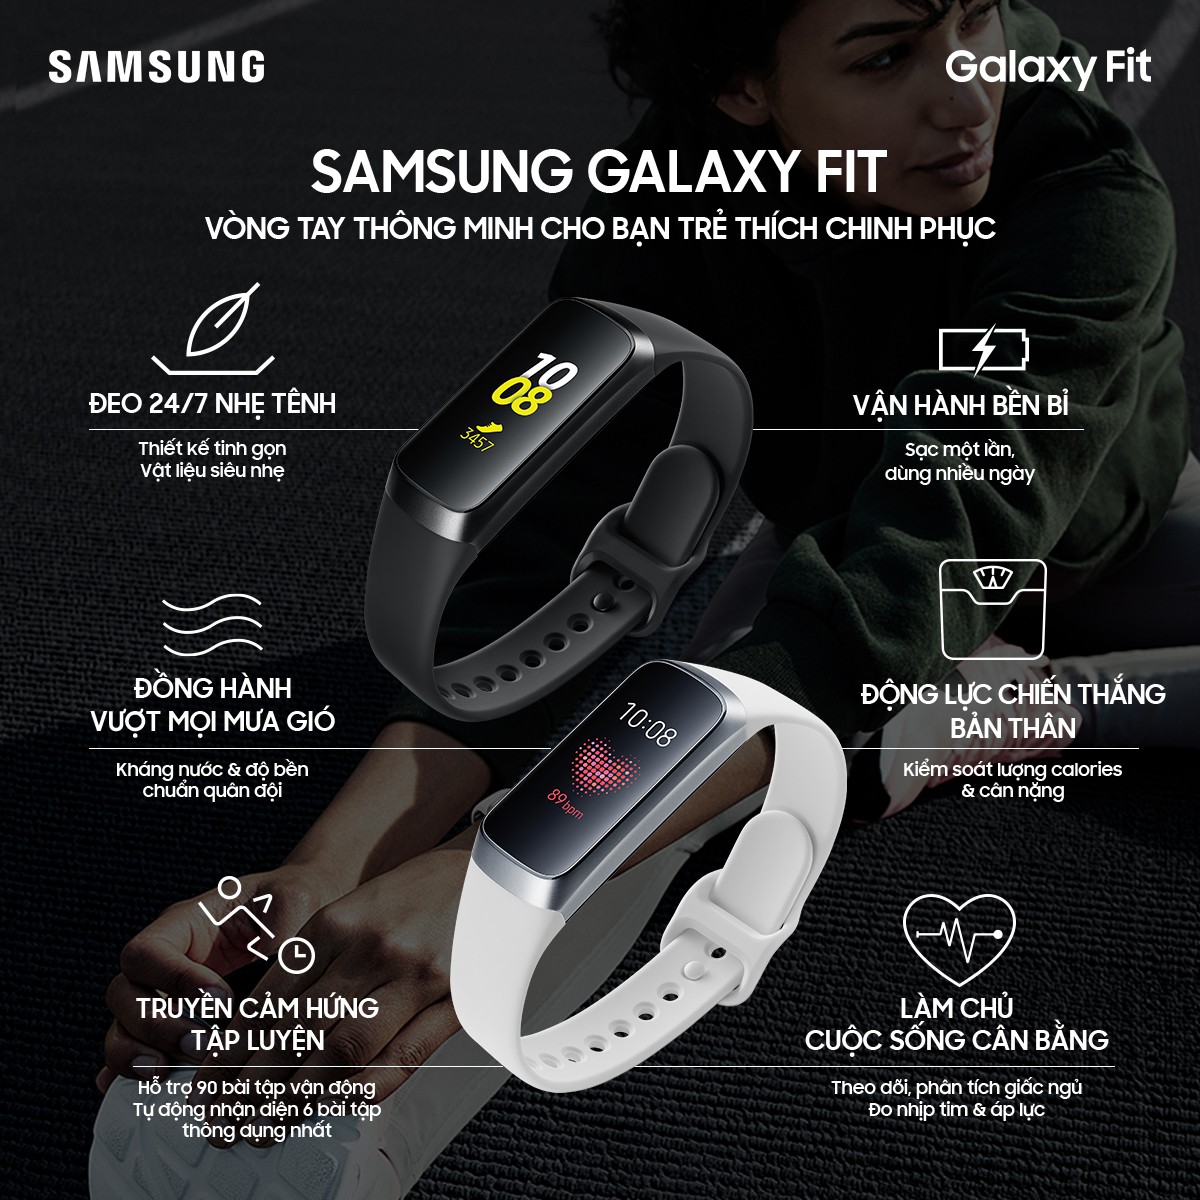 Trải nghiệm Galaxy Fit: theo dõi sức khoẻ 24 giờ liên tục - Fptshop.com.vn